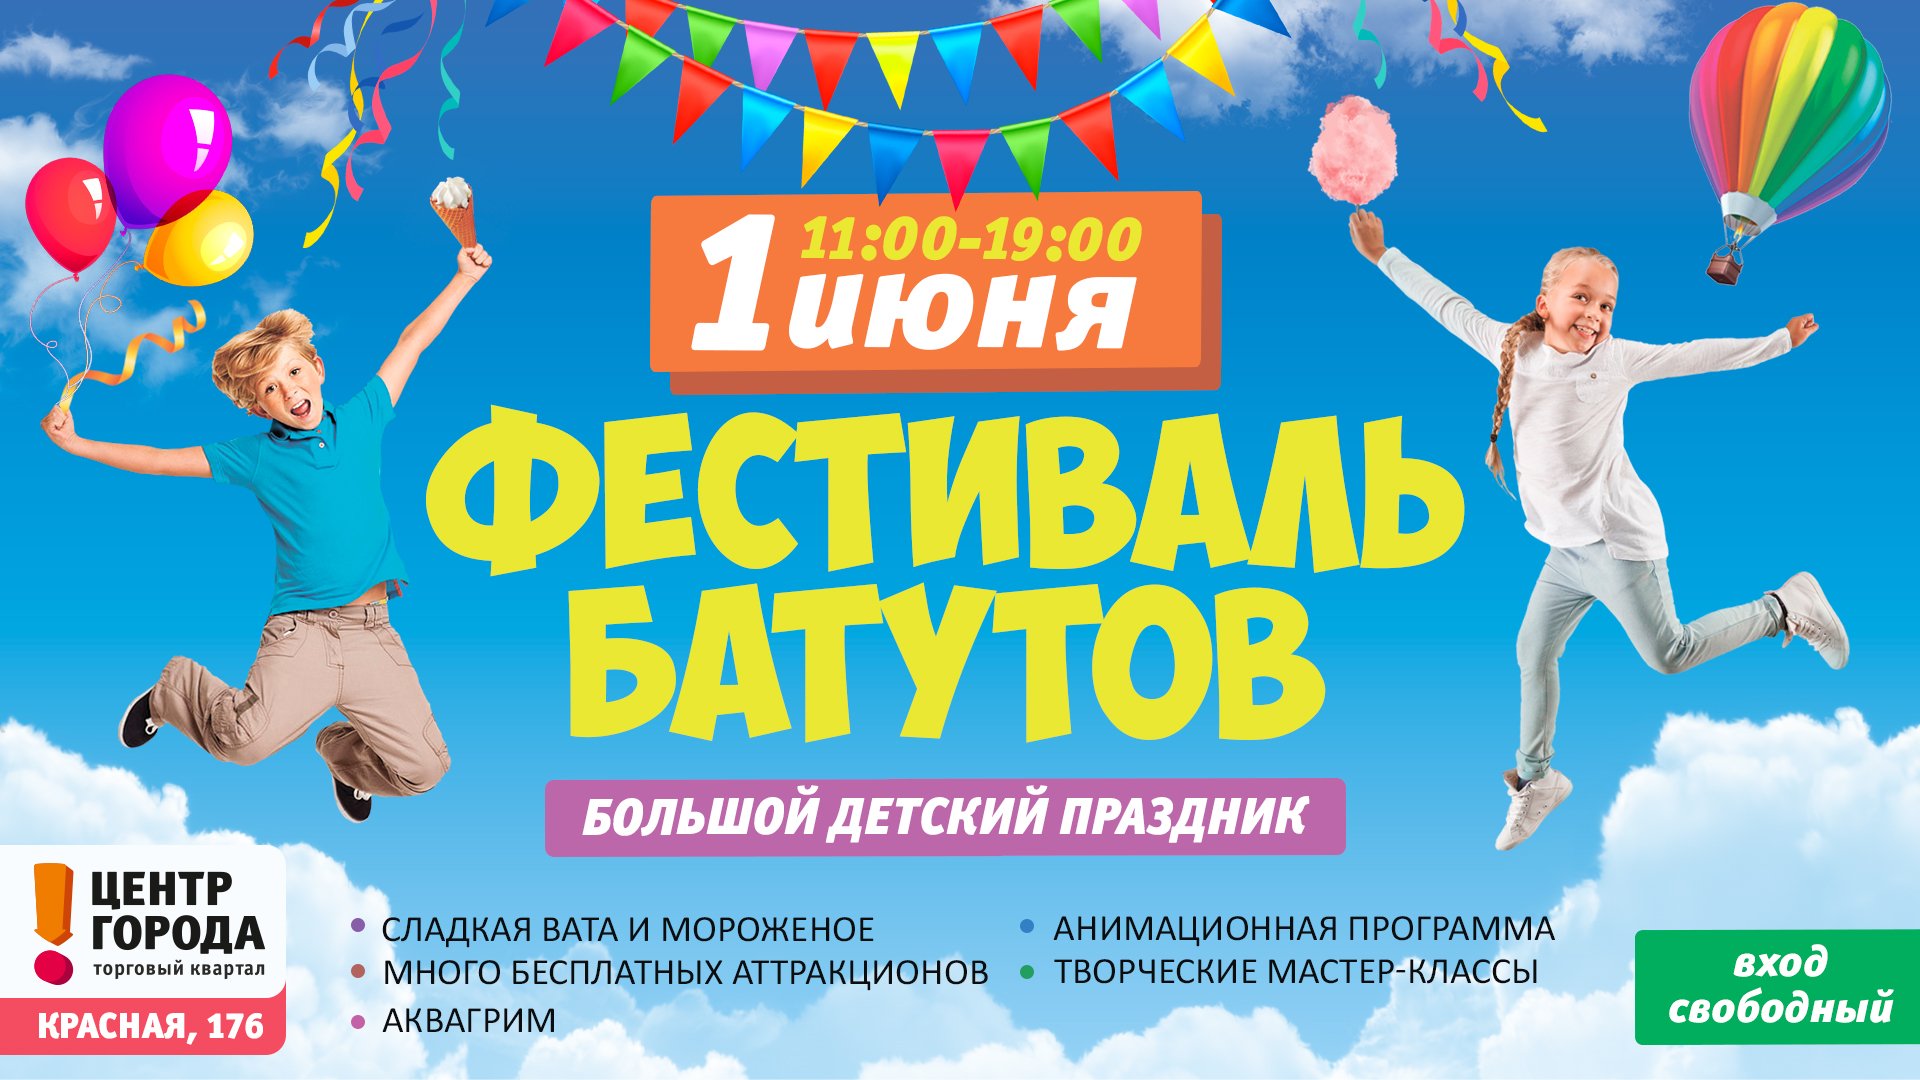 1.06 - Фестиваль батутов с бесплатными аттракционами!